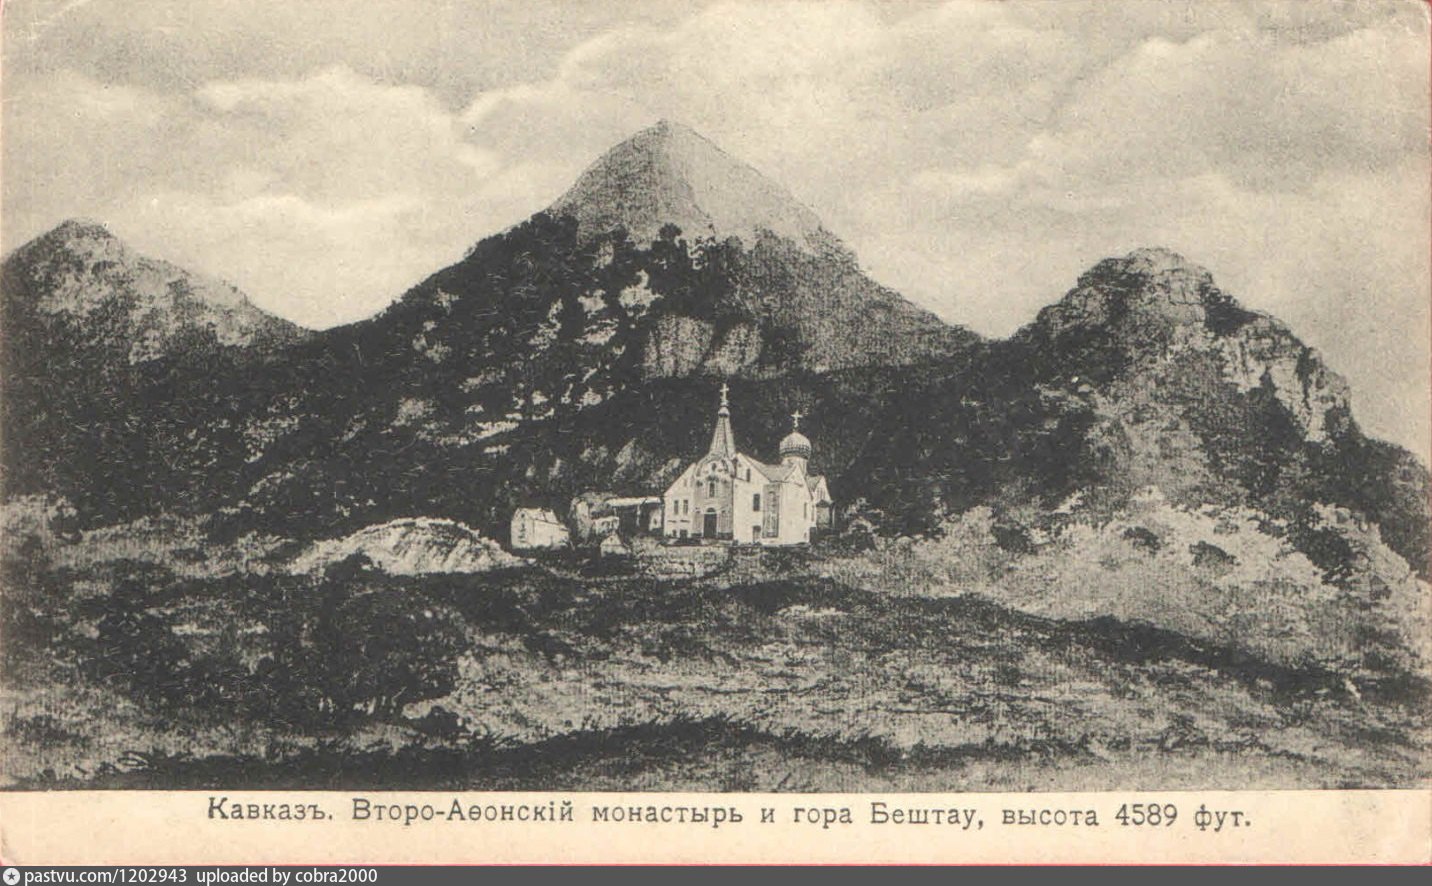 второафонский монастырь на горе бештау